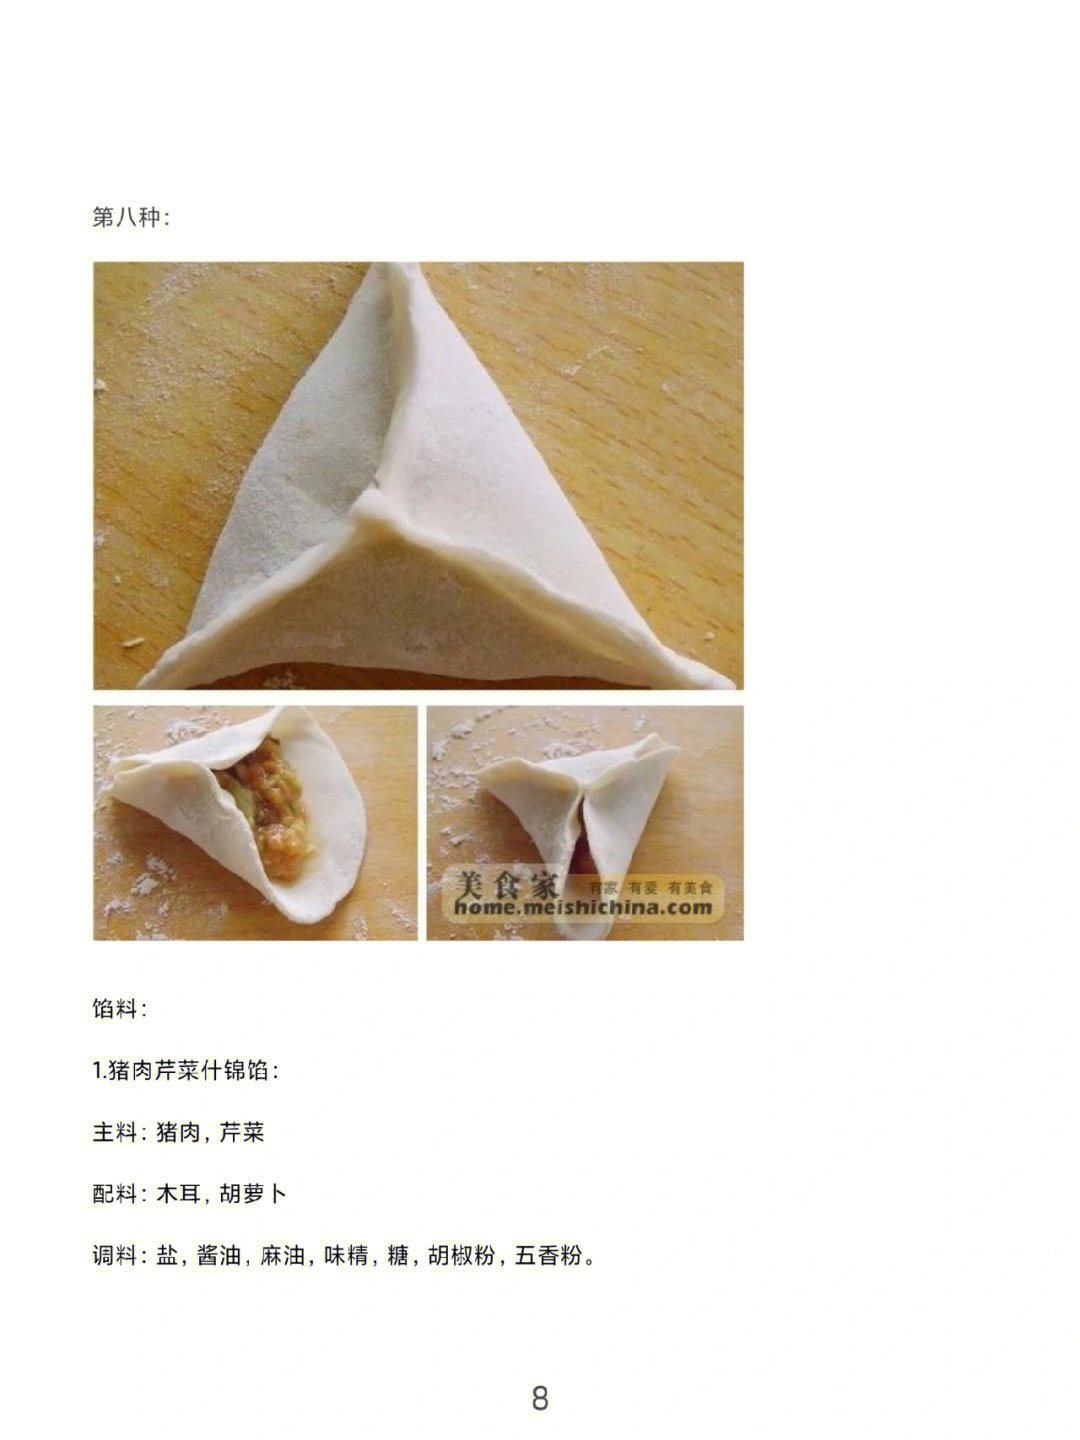 饺子八种包法22种馅料调法劳动教育课素材